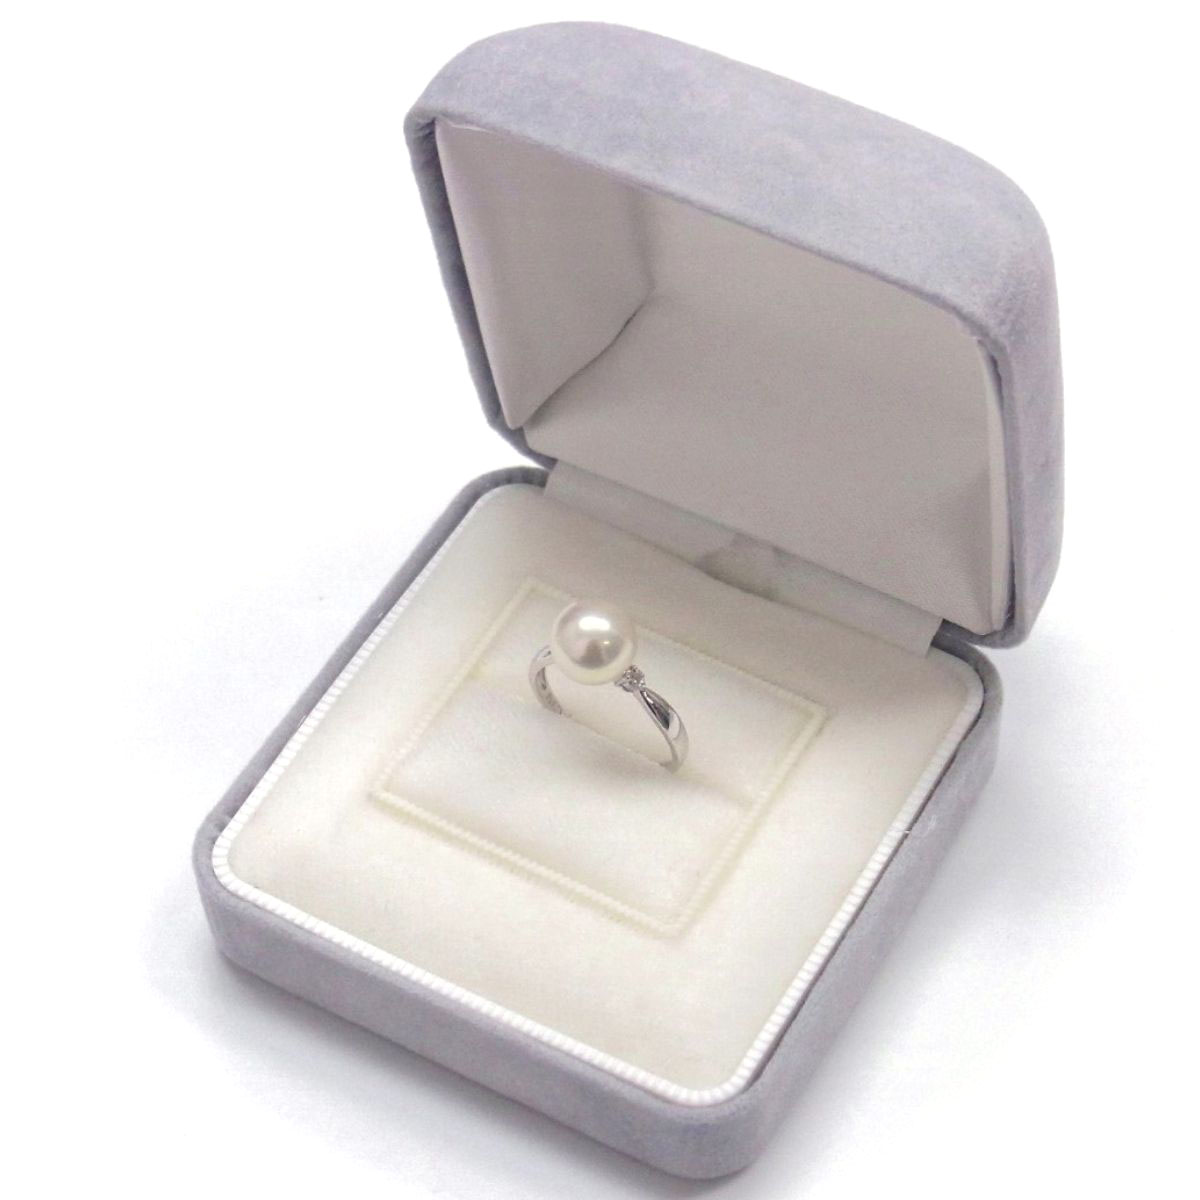 真珠真珠 ホワイト 指輪 サイズ12.5 Pt900 玉 約8mm パール リング